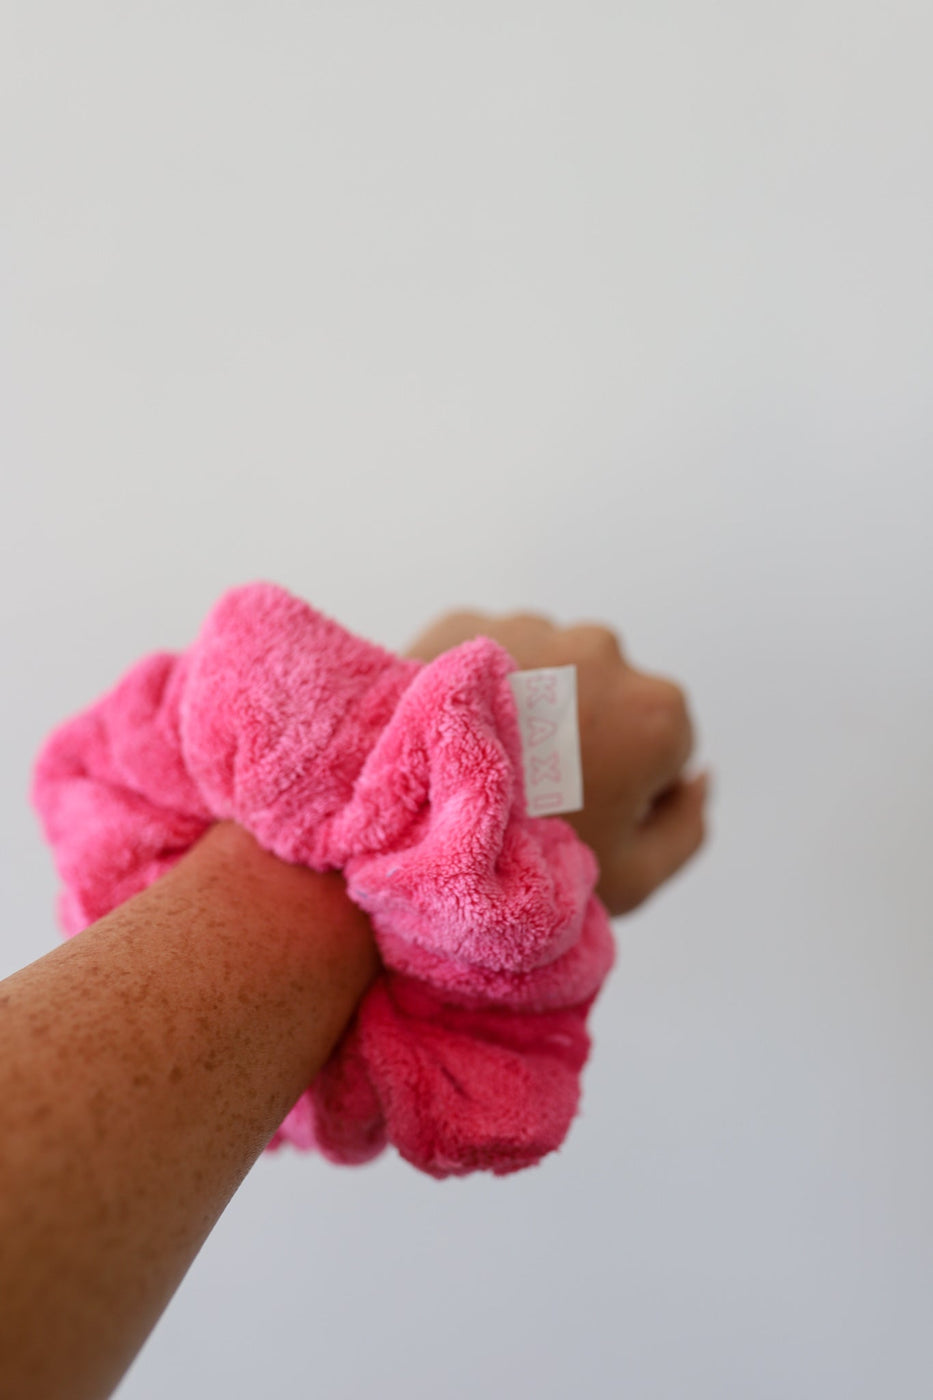 a pink towel on a wrist